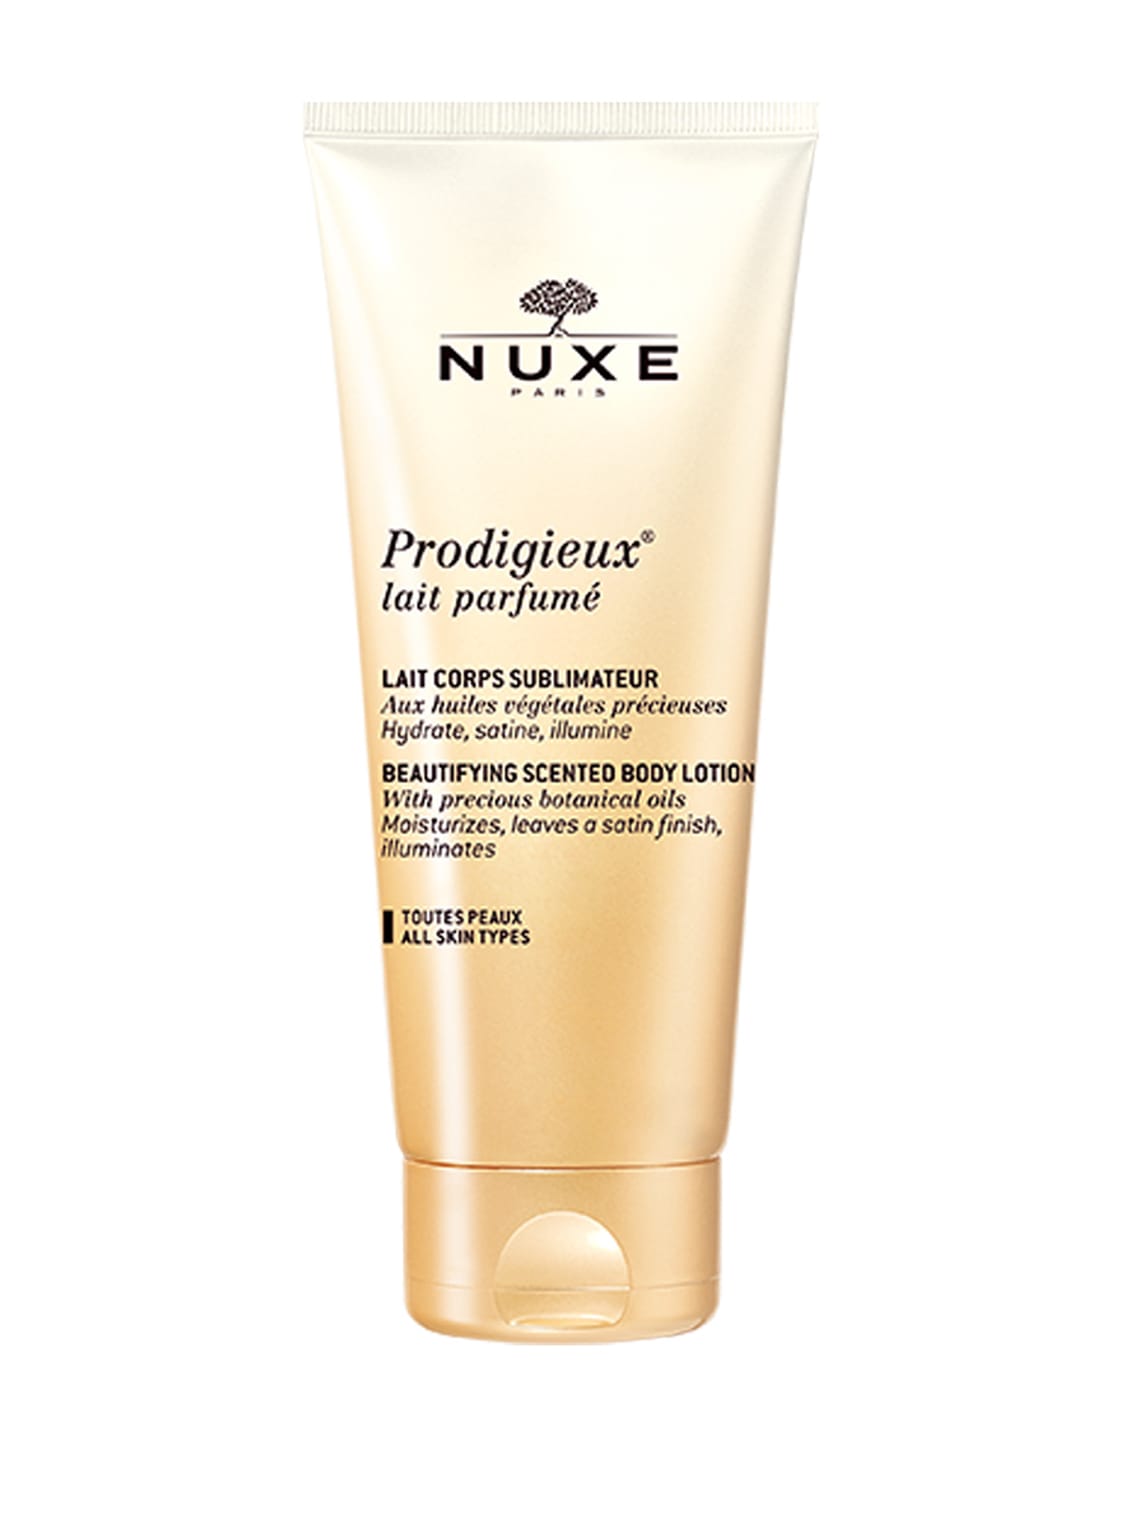 Nuxe Prodigieux Lait Parfume Parfümierte, hautverfeinernde Körpermilch 200 ml von NUXE